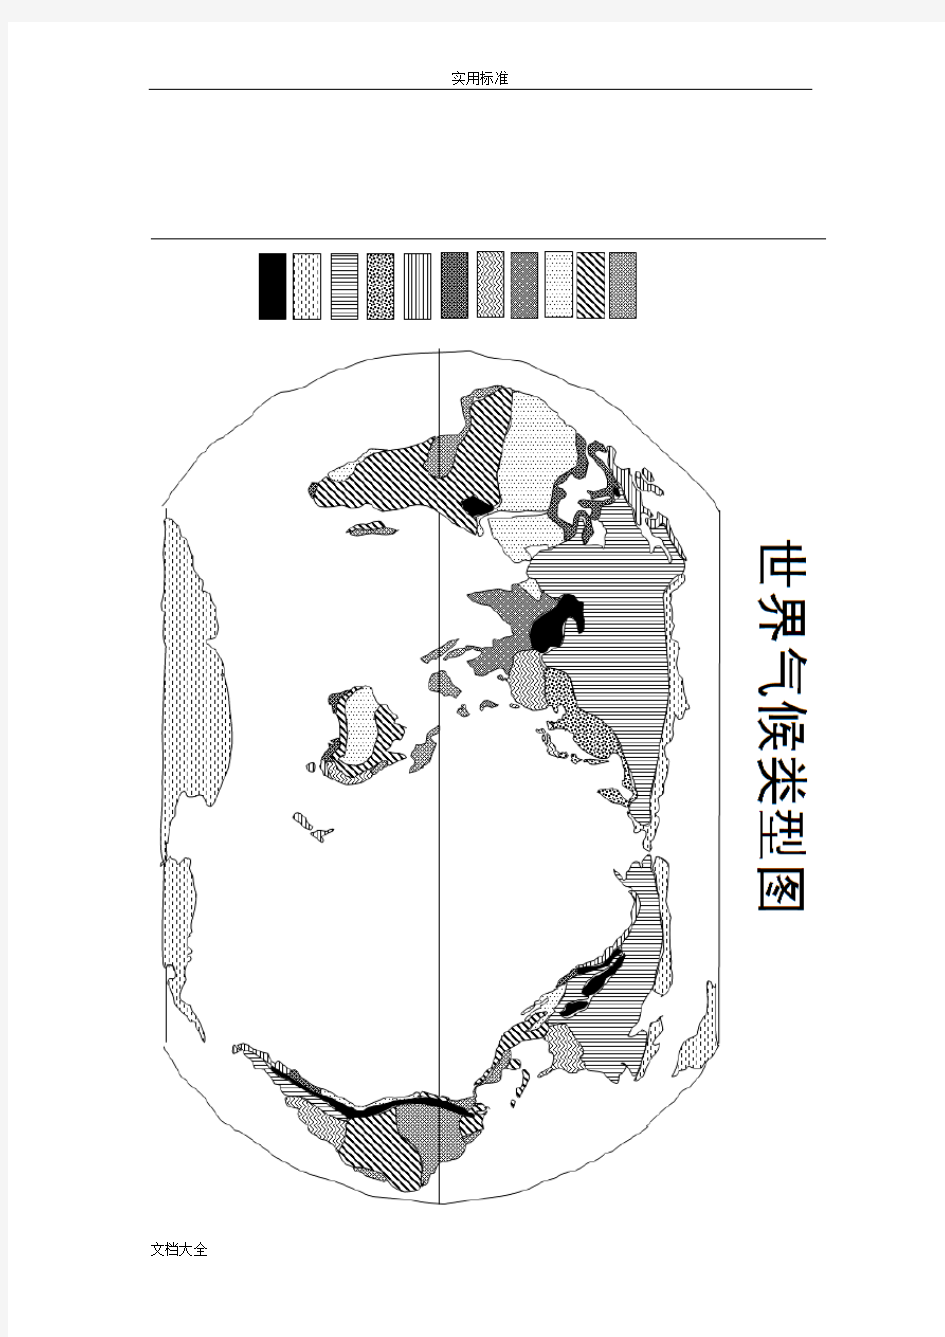 世界地图空白图(高清版)36756